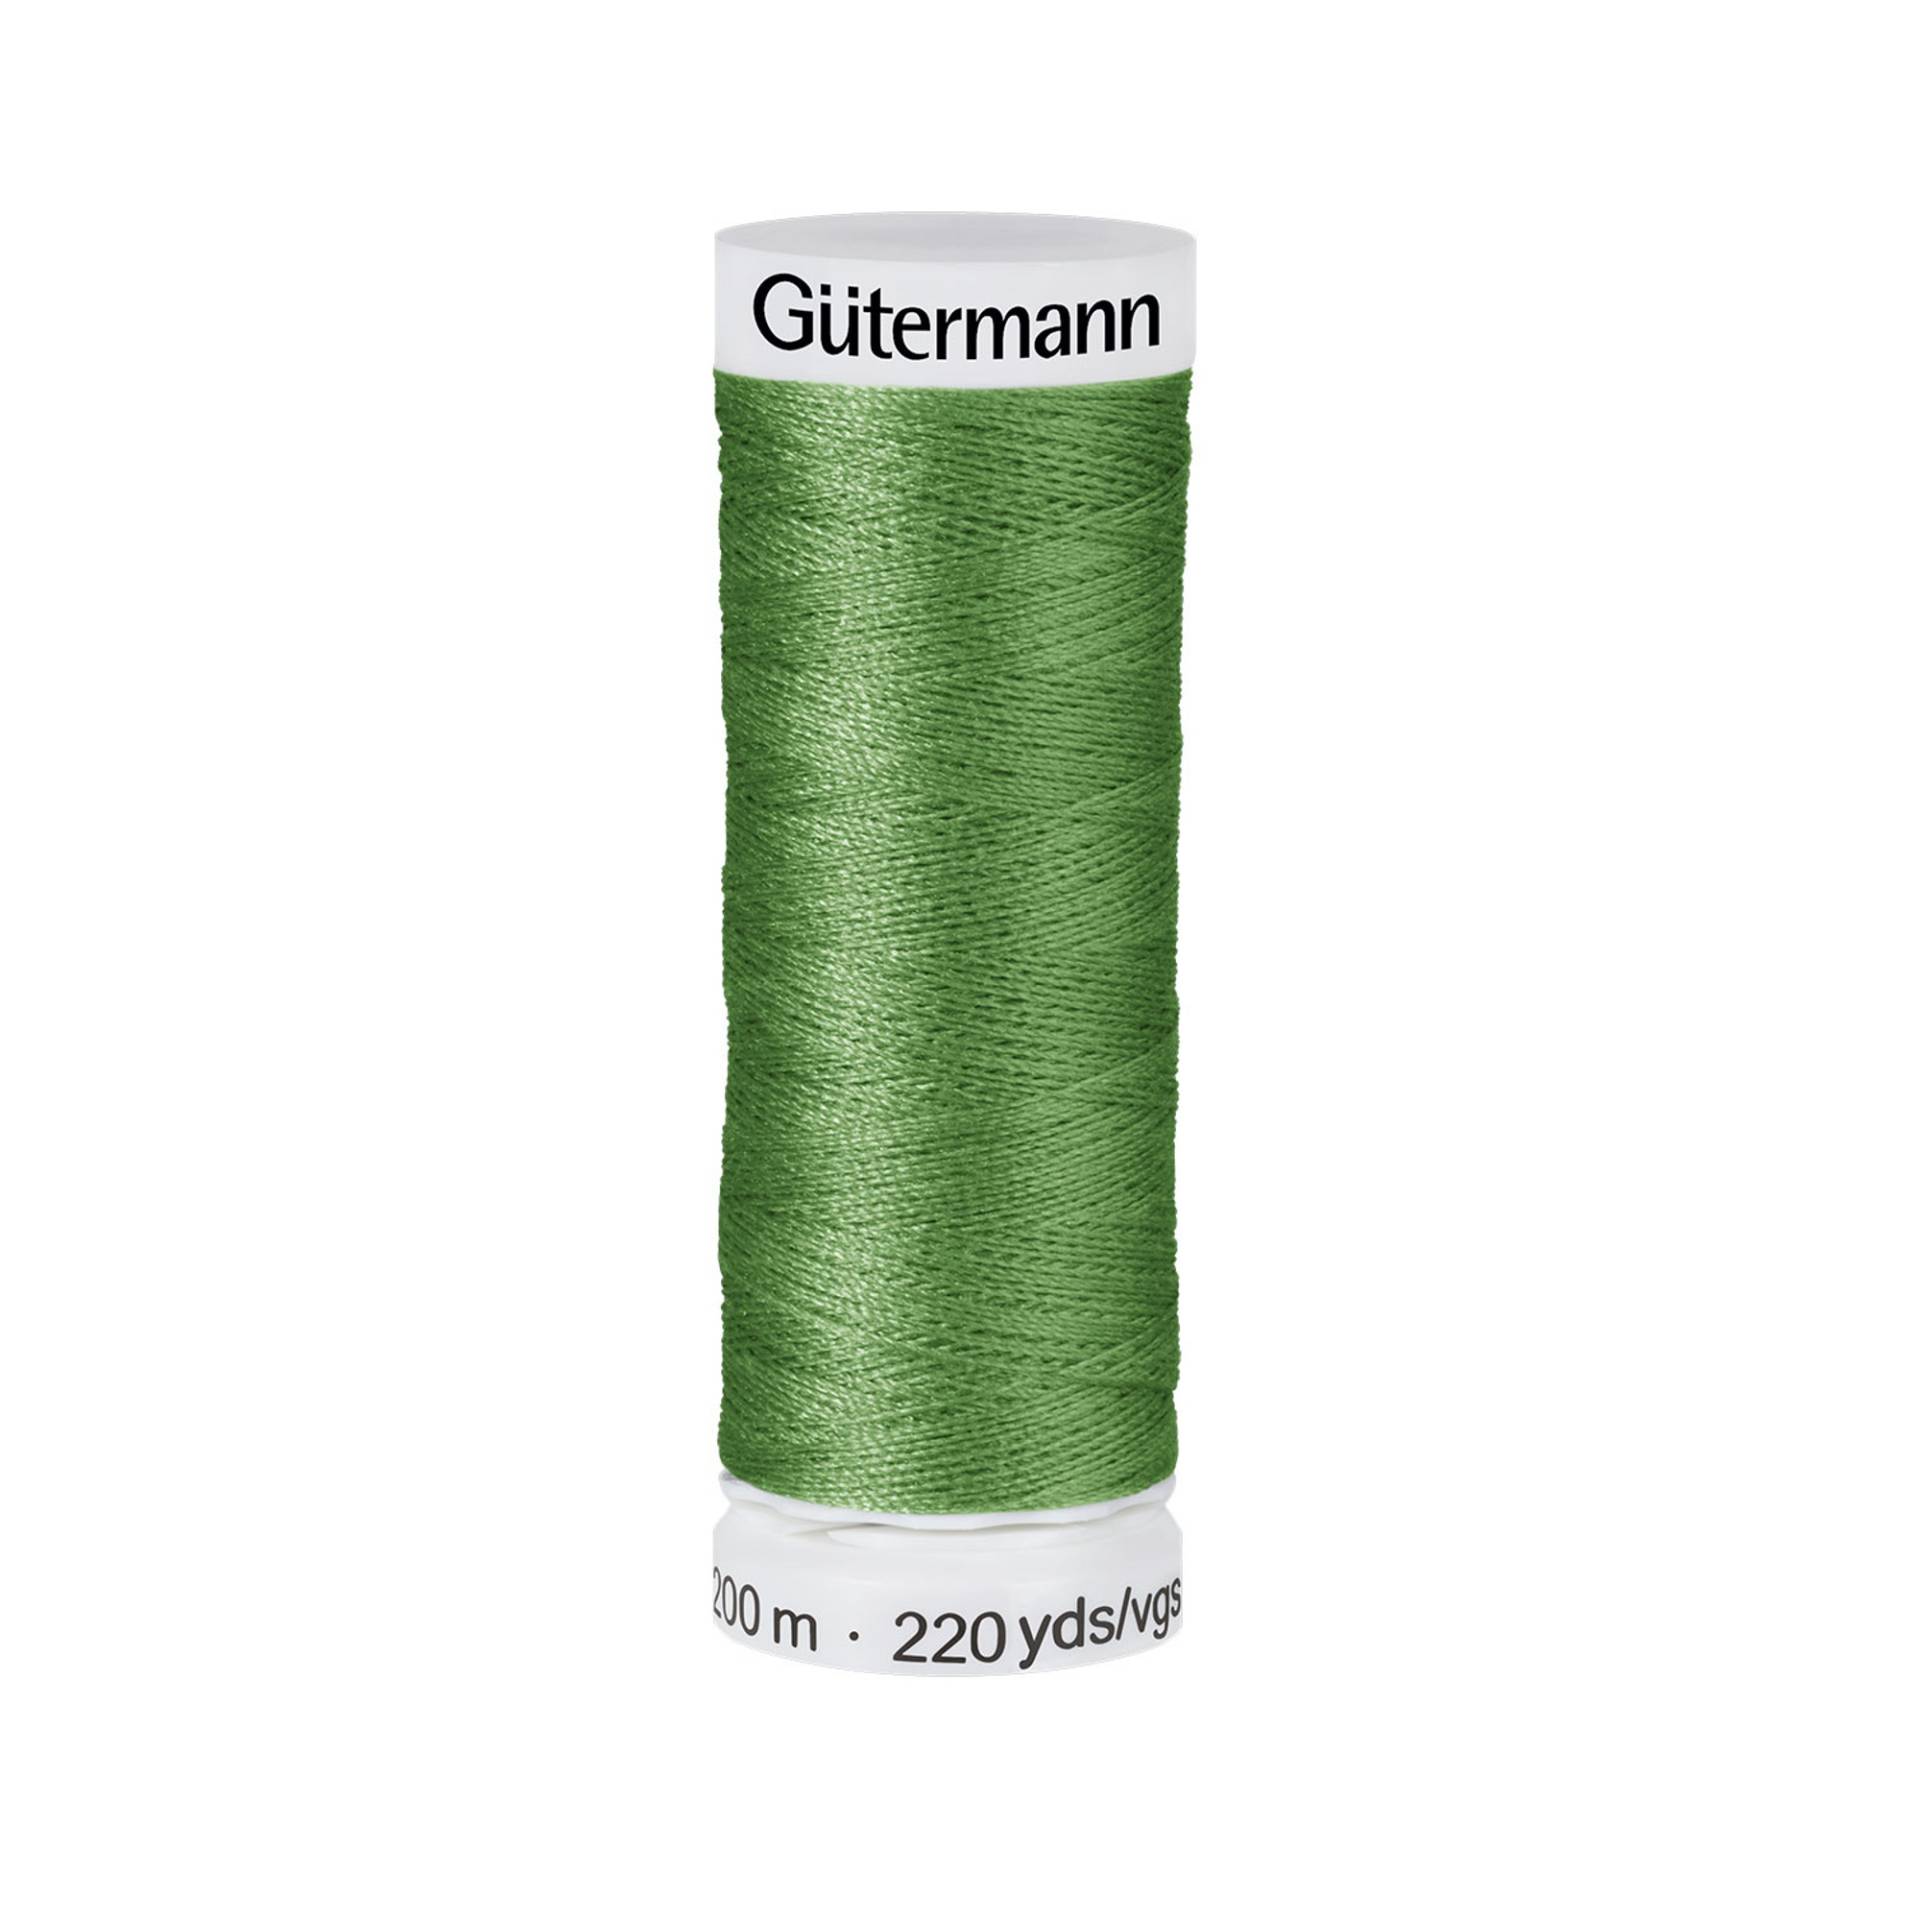 Gütermann Allesnäher (919) grün von Stoffe Hemmers